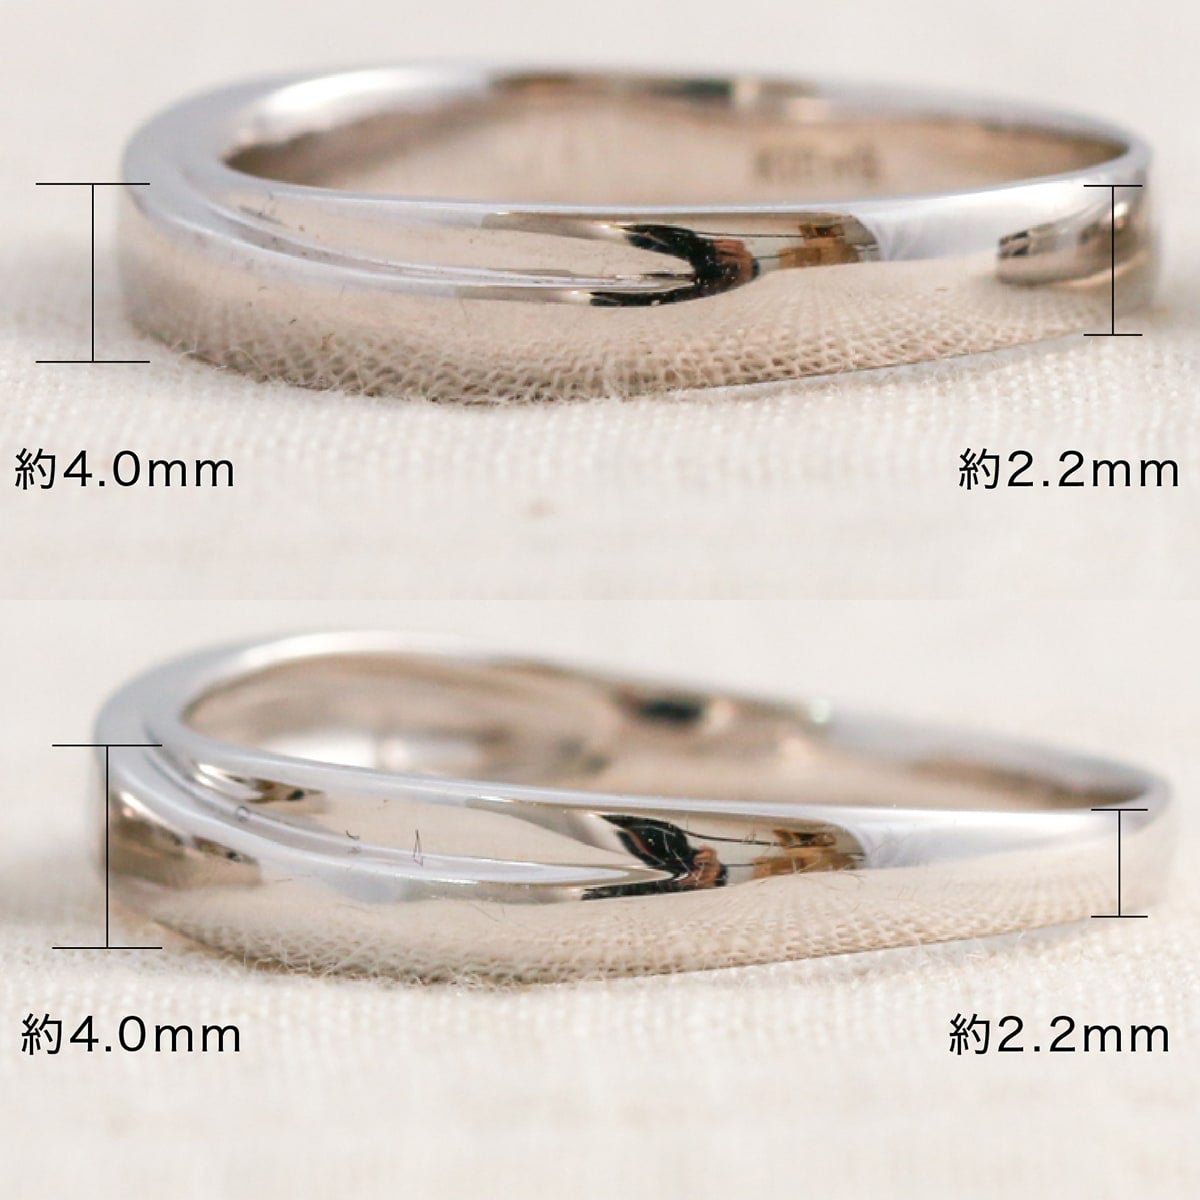 結婚指輪 2本セット | mr793l-mr793m